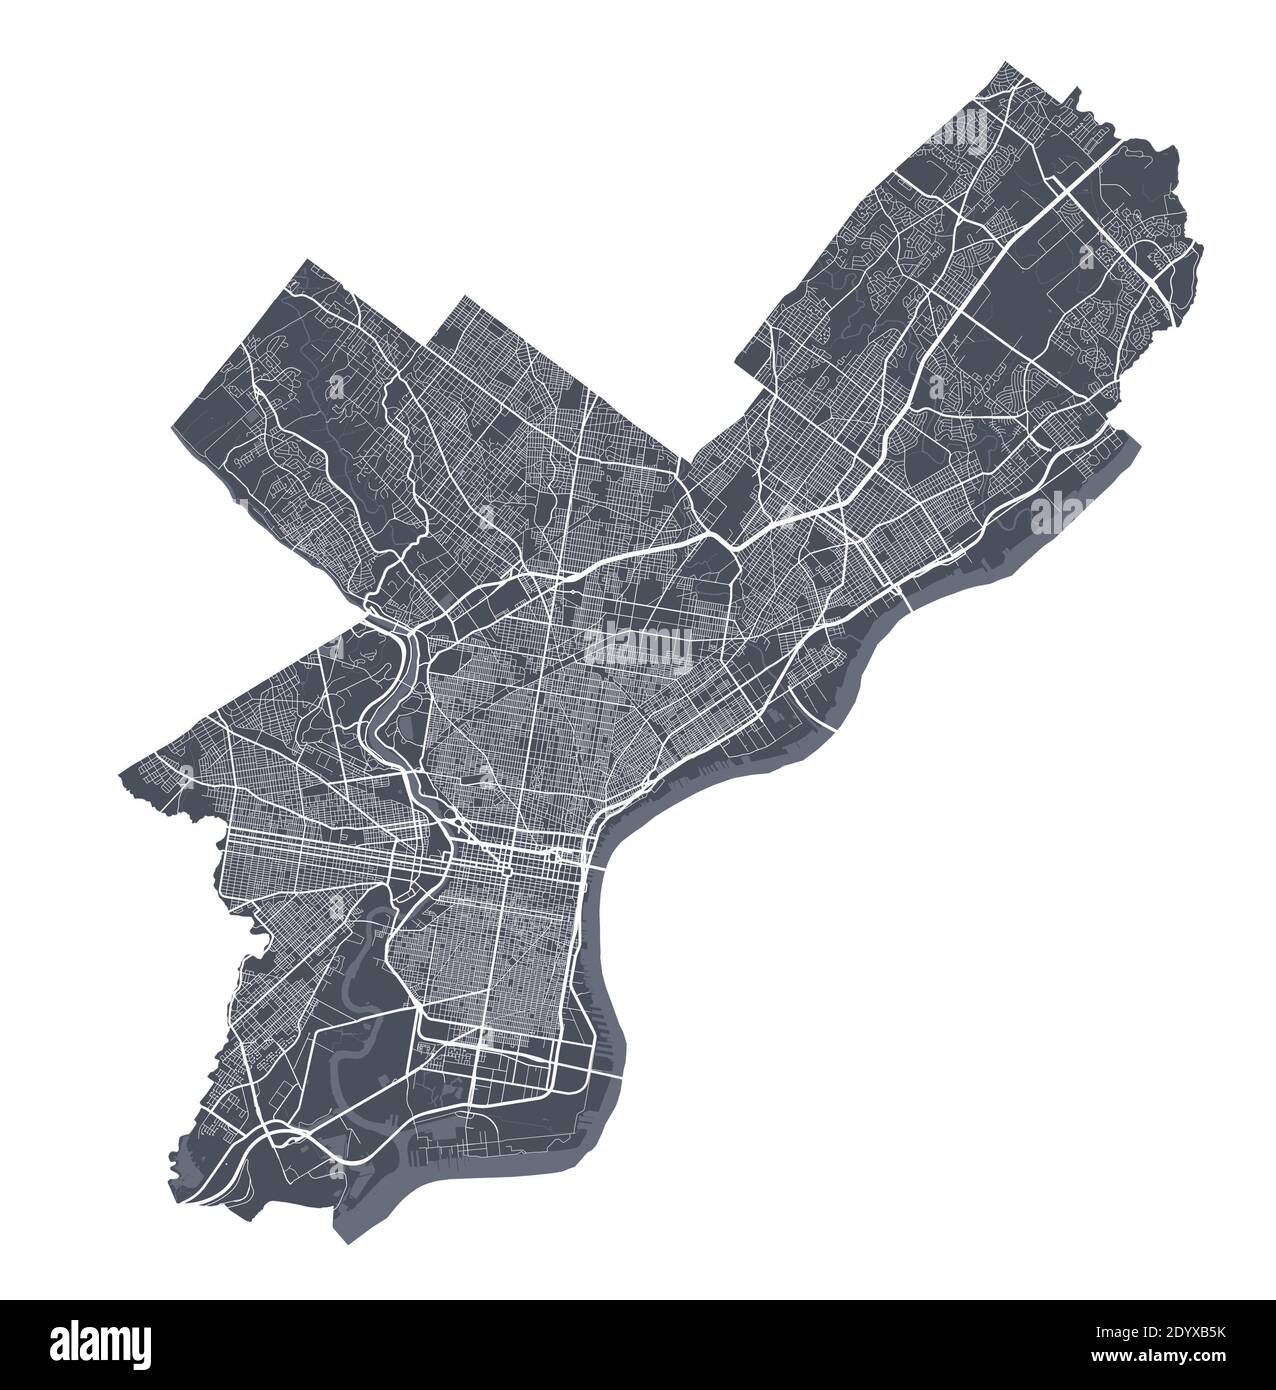 Philadelphia-Karte. Detaillierte Vektorkarte von Philadelphia Stadtverwaltung. Dunkles Plakat mit Straßen auf weißem Hintergrund. Stock Vektor